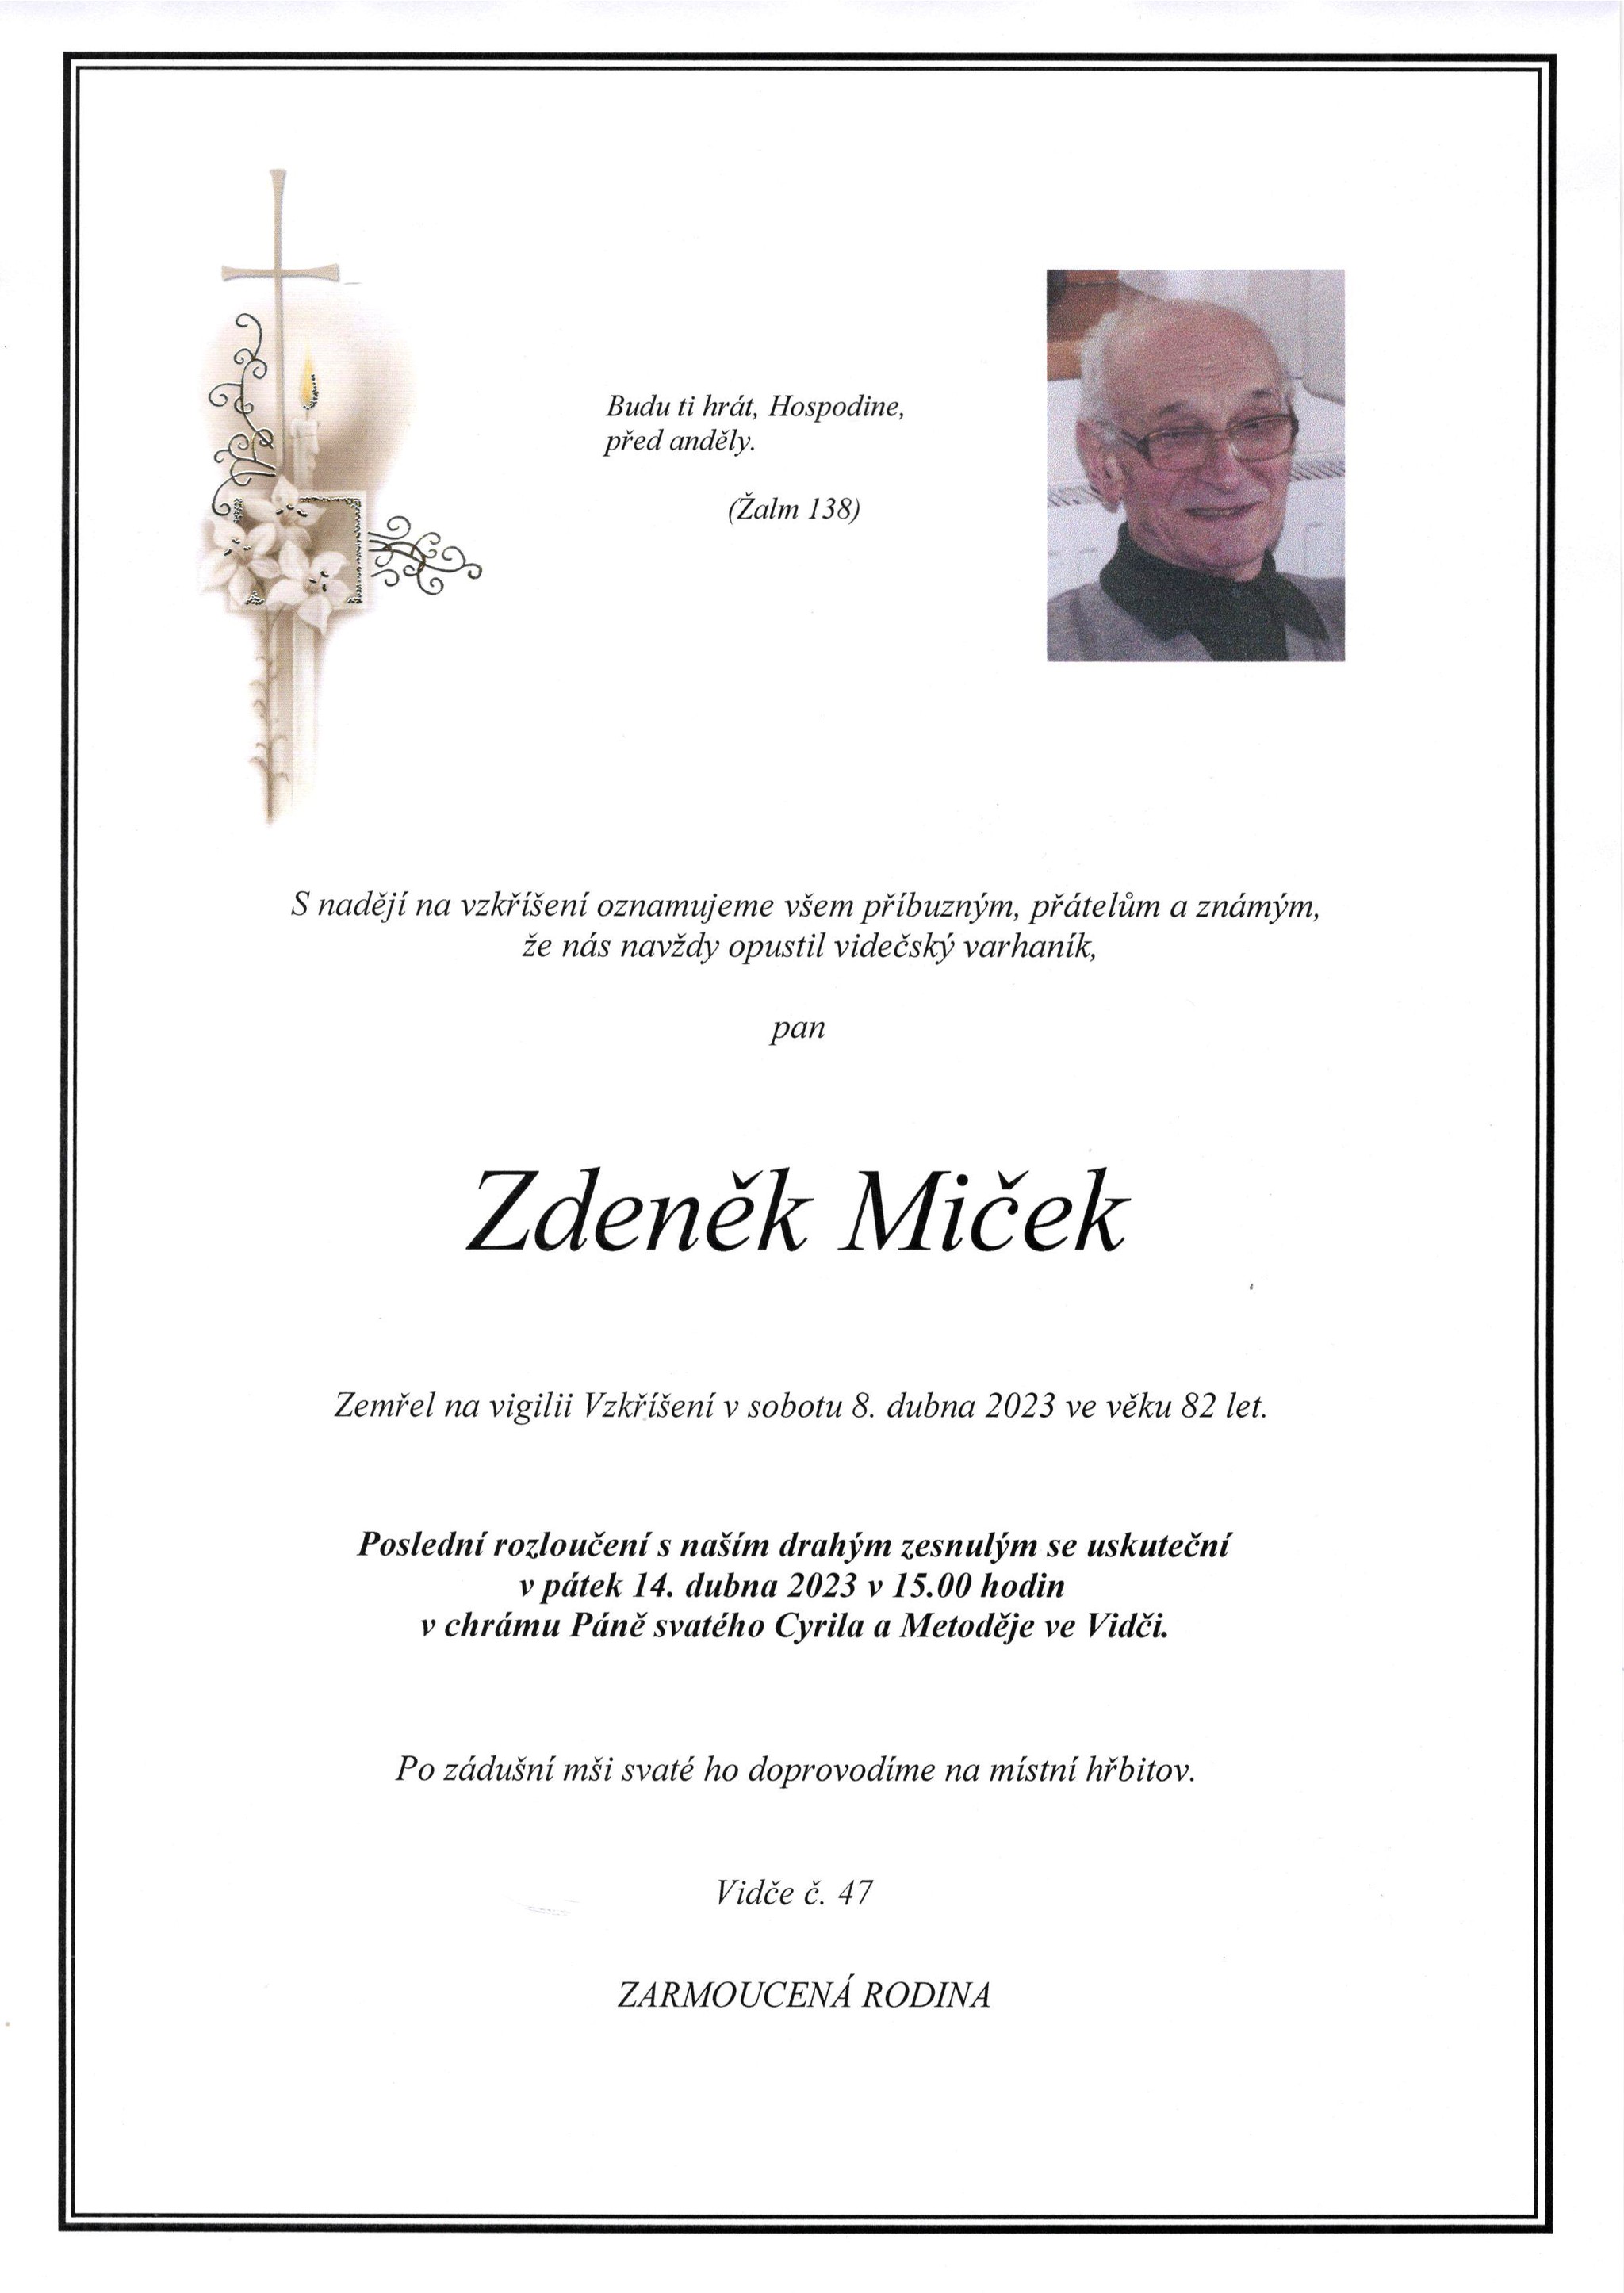 Zdeněk Miček